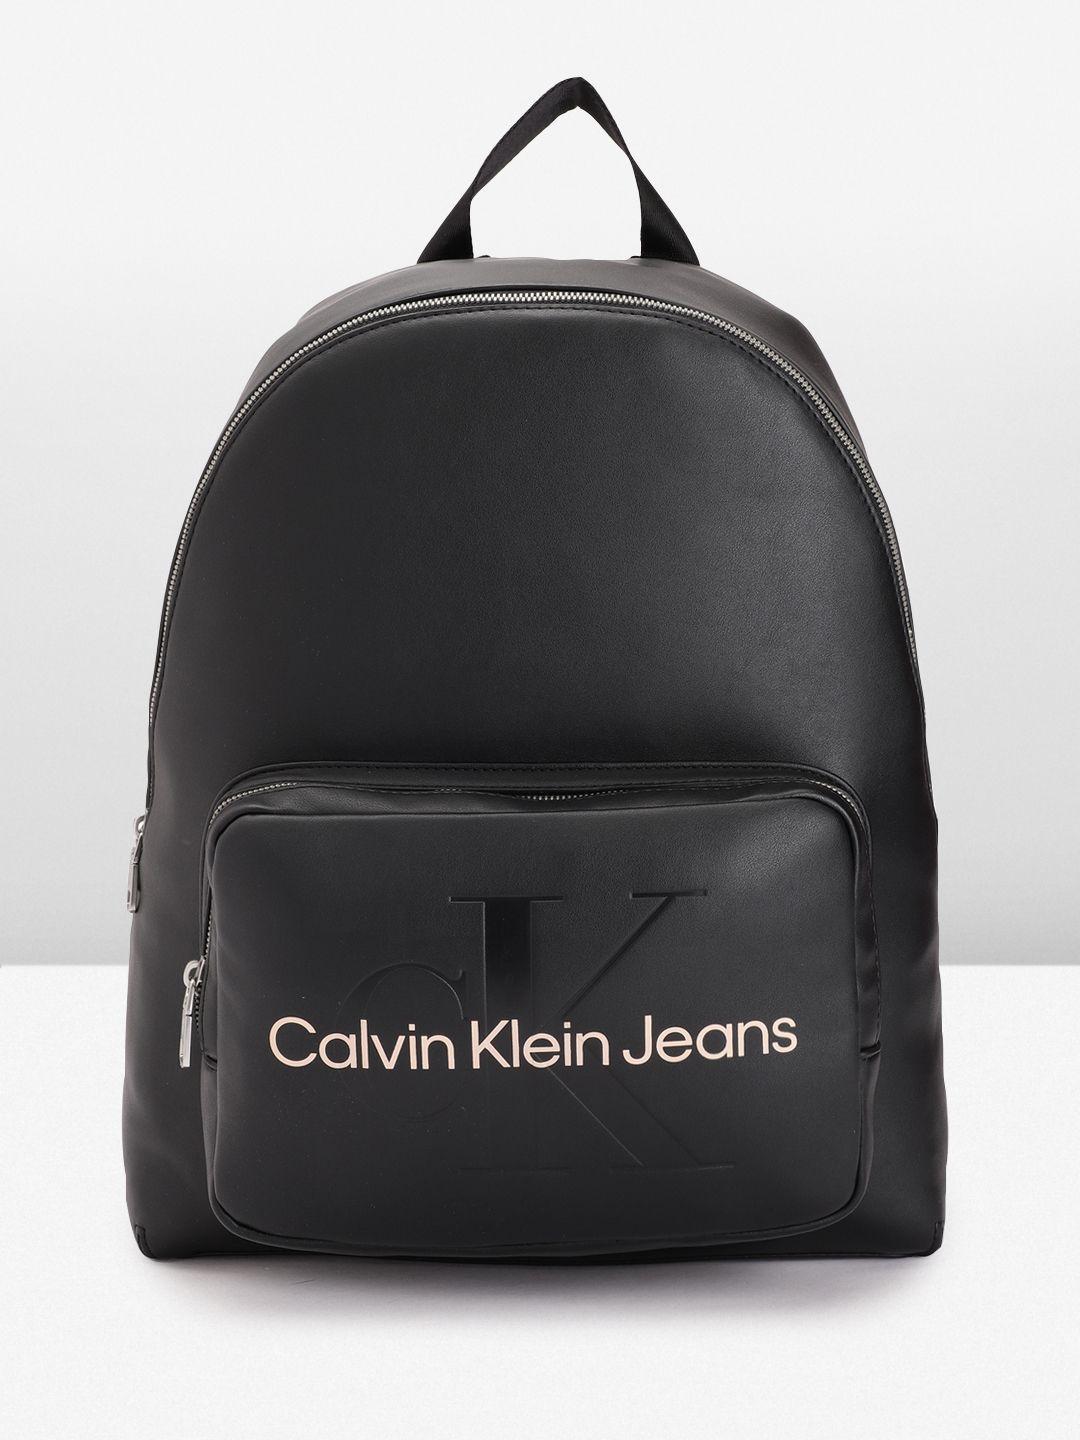 calvin klein women brand logo printed & debossed backpack